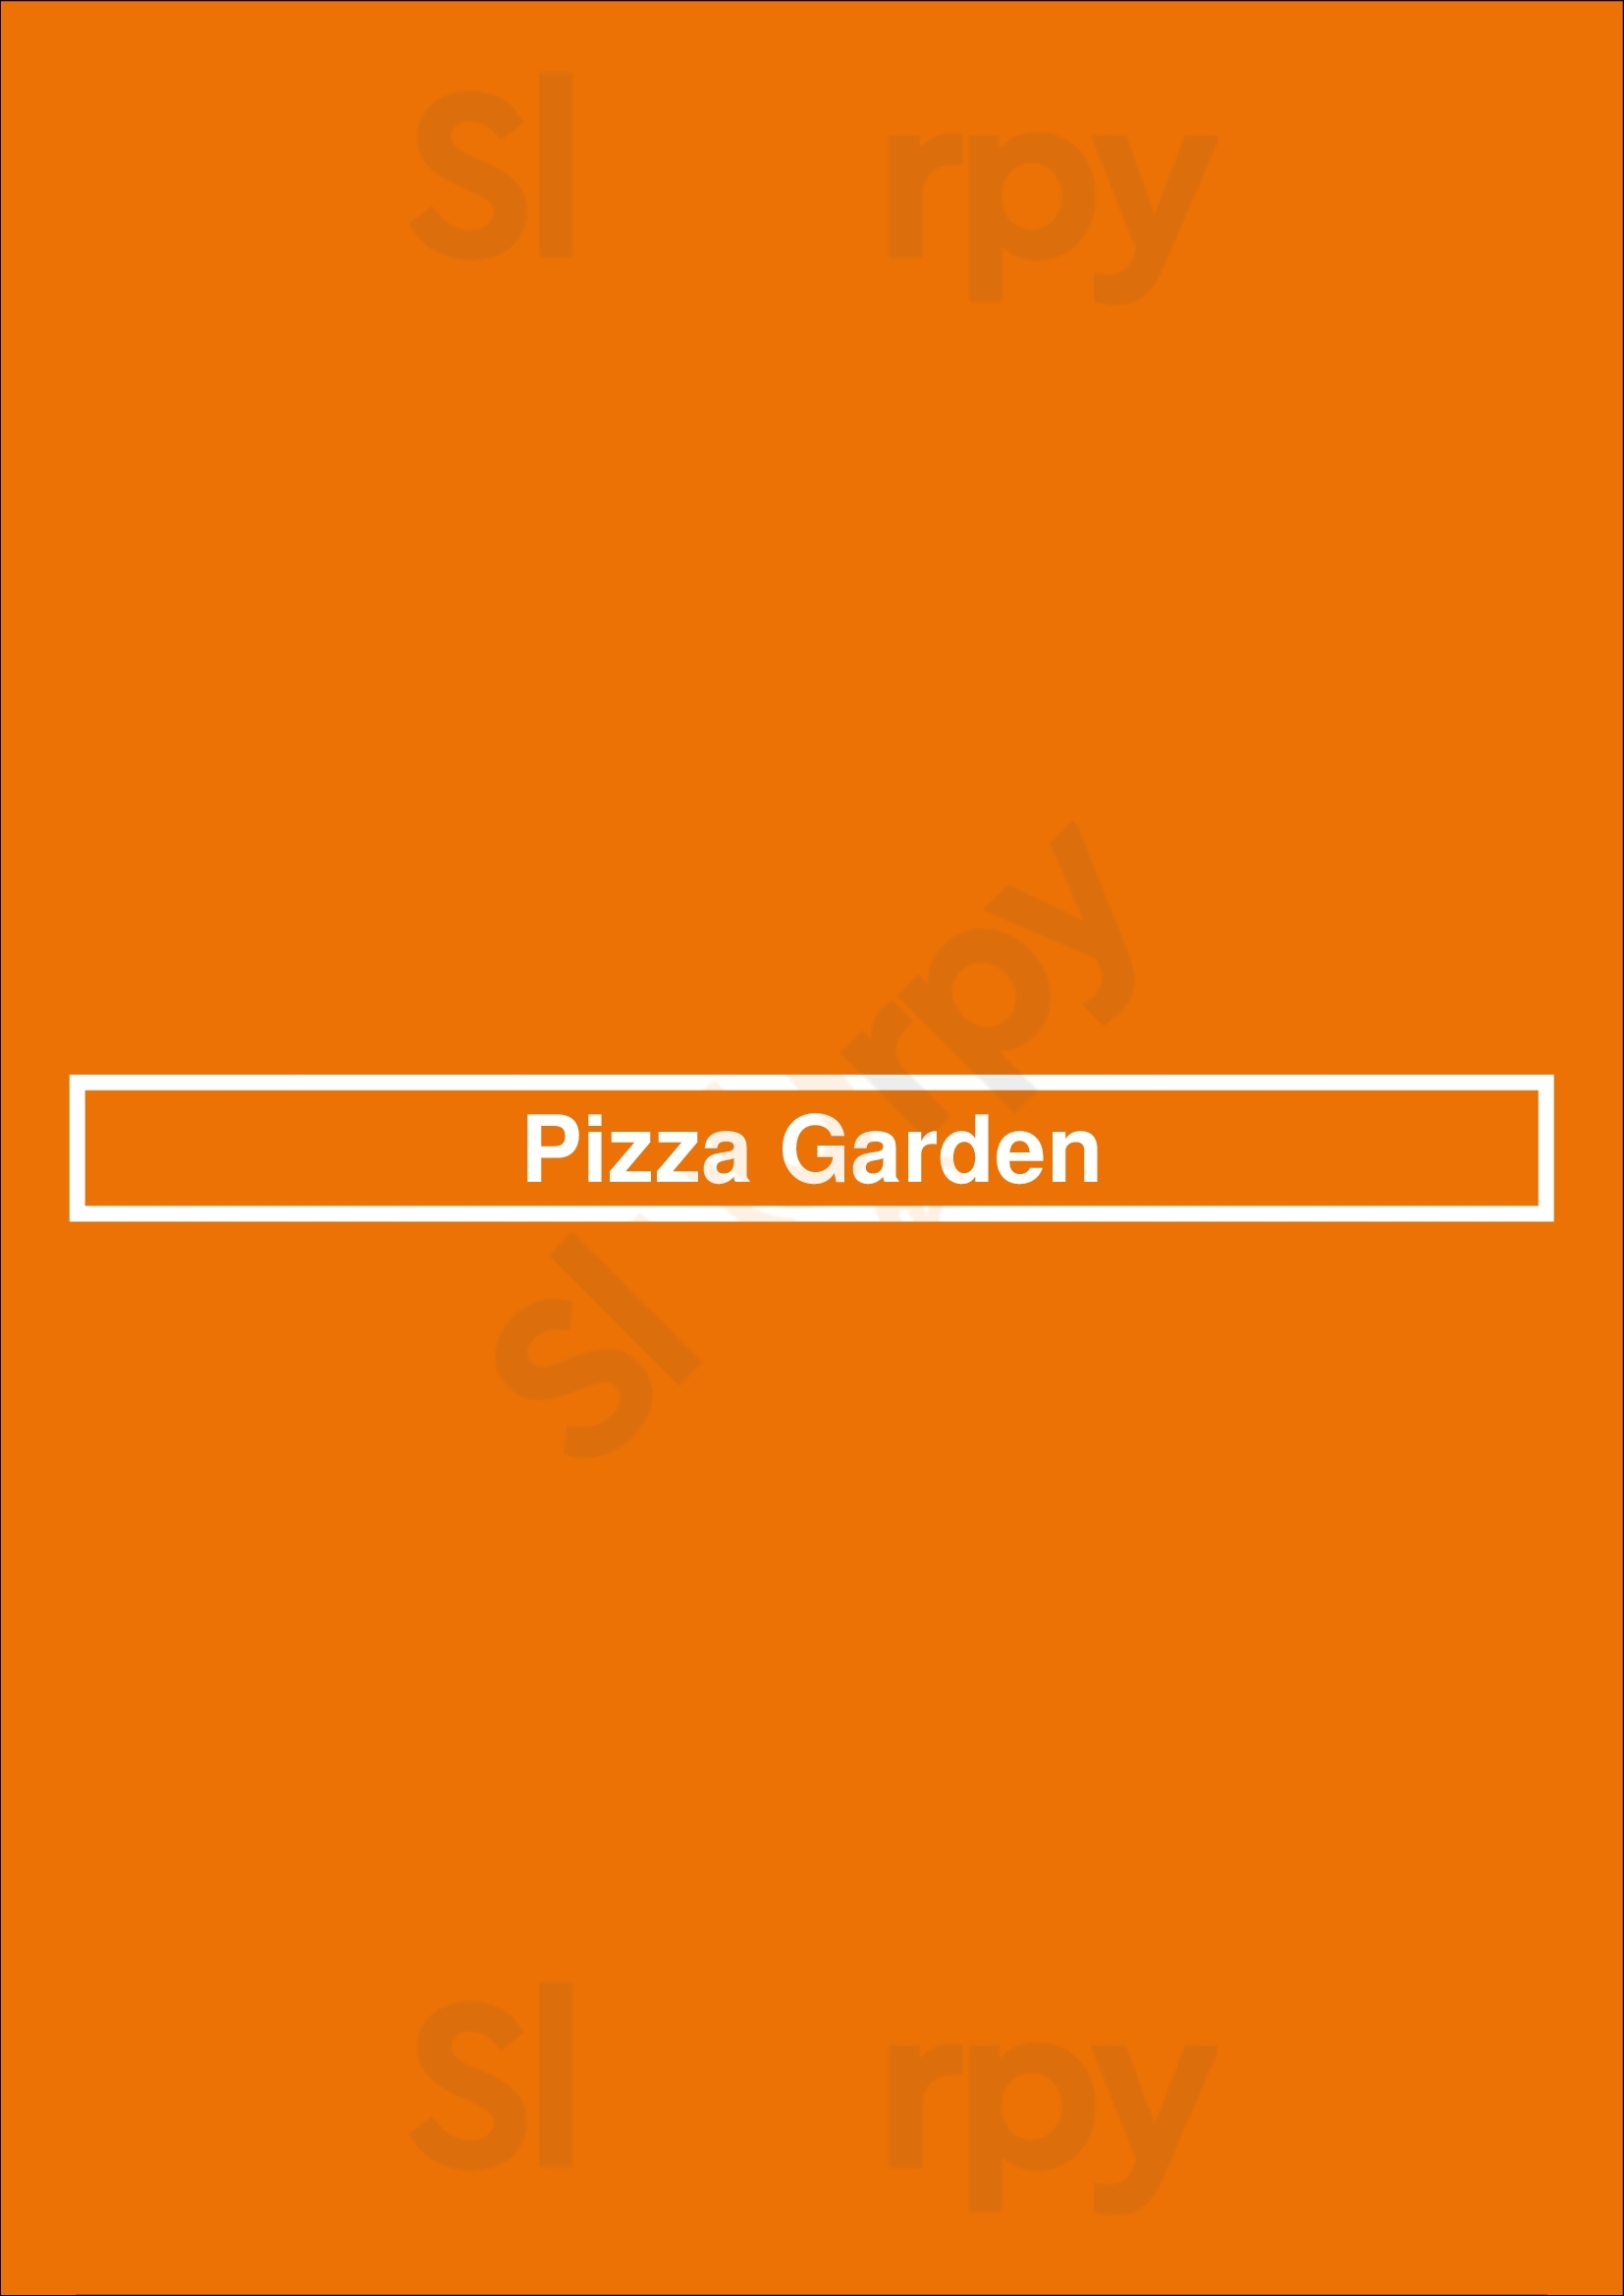 Pizza Garden Vancouver Menu - 1